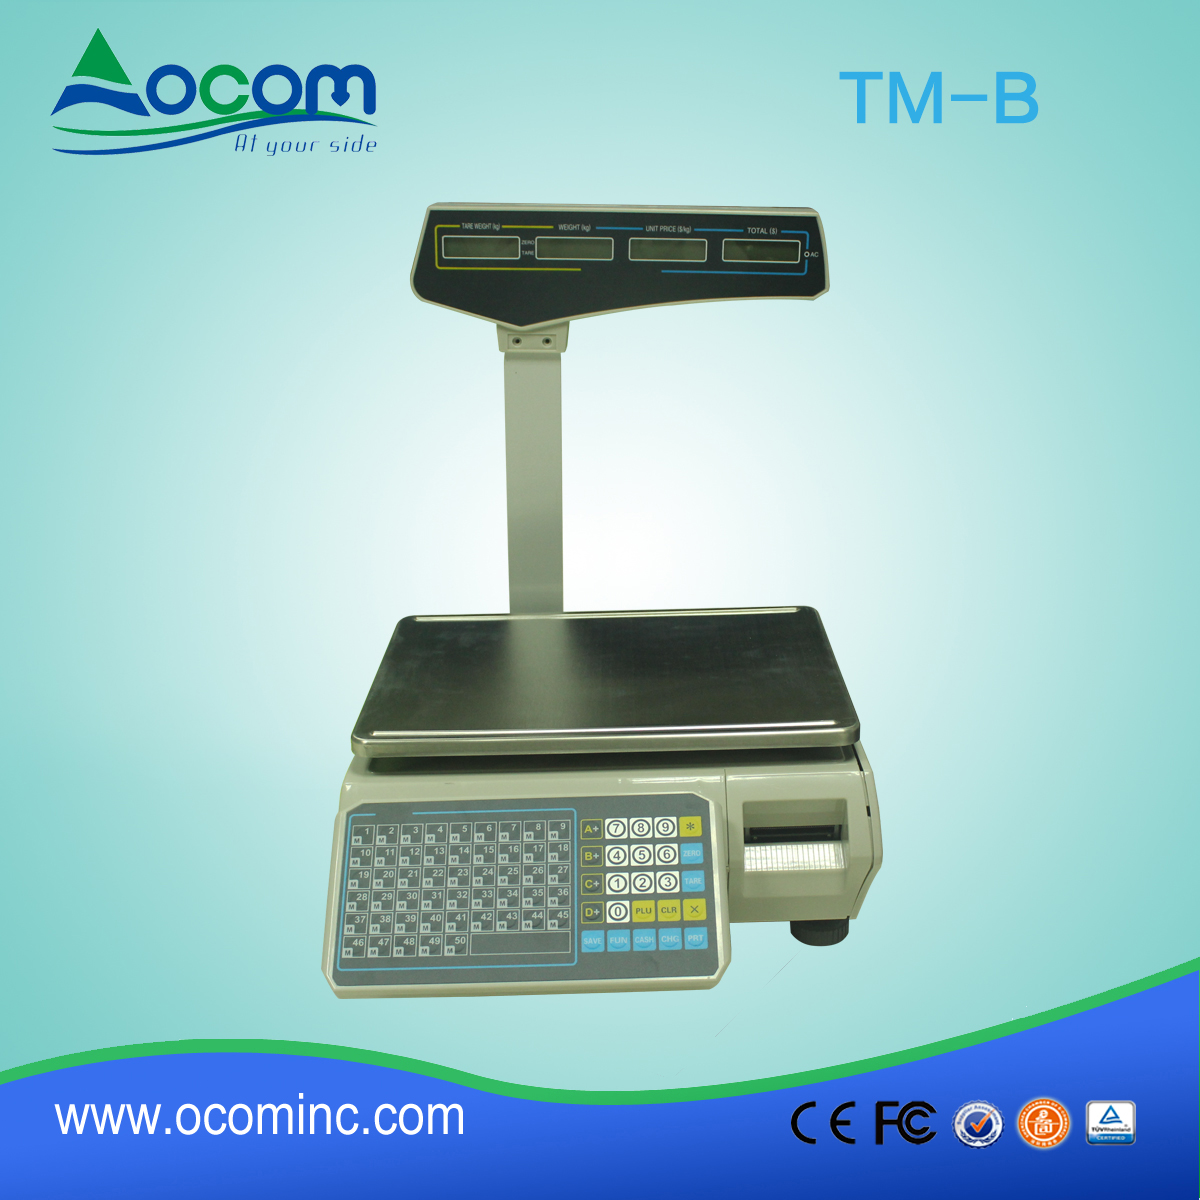 TM-B digitale weegschaal met barcodes voor elektronische barcodes